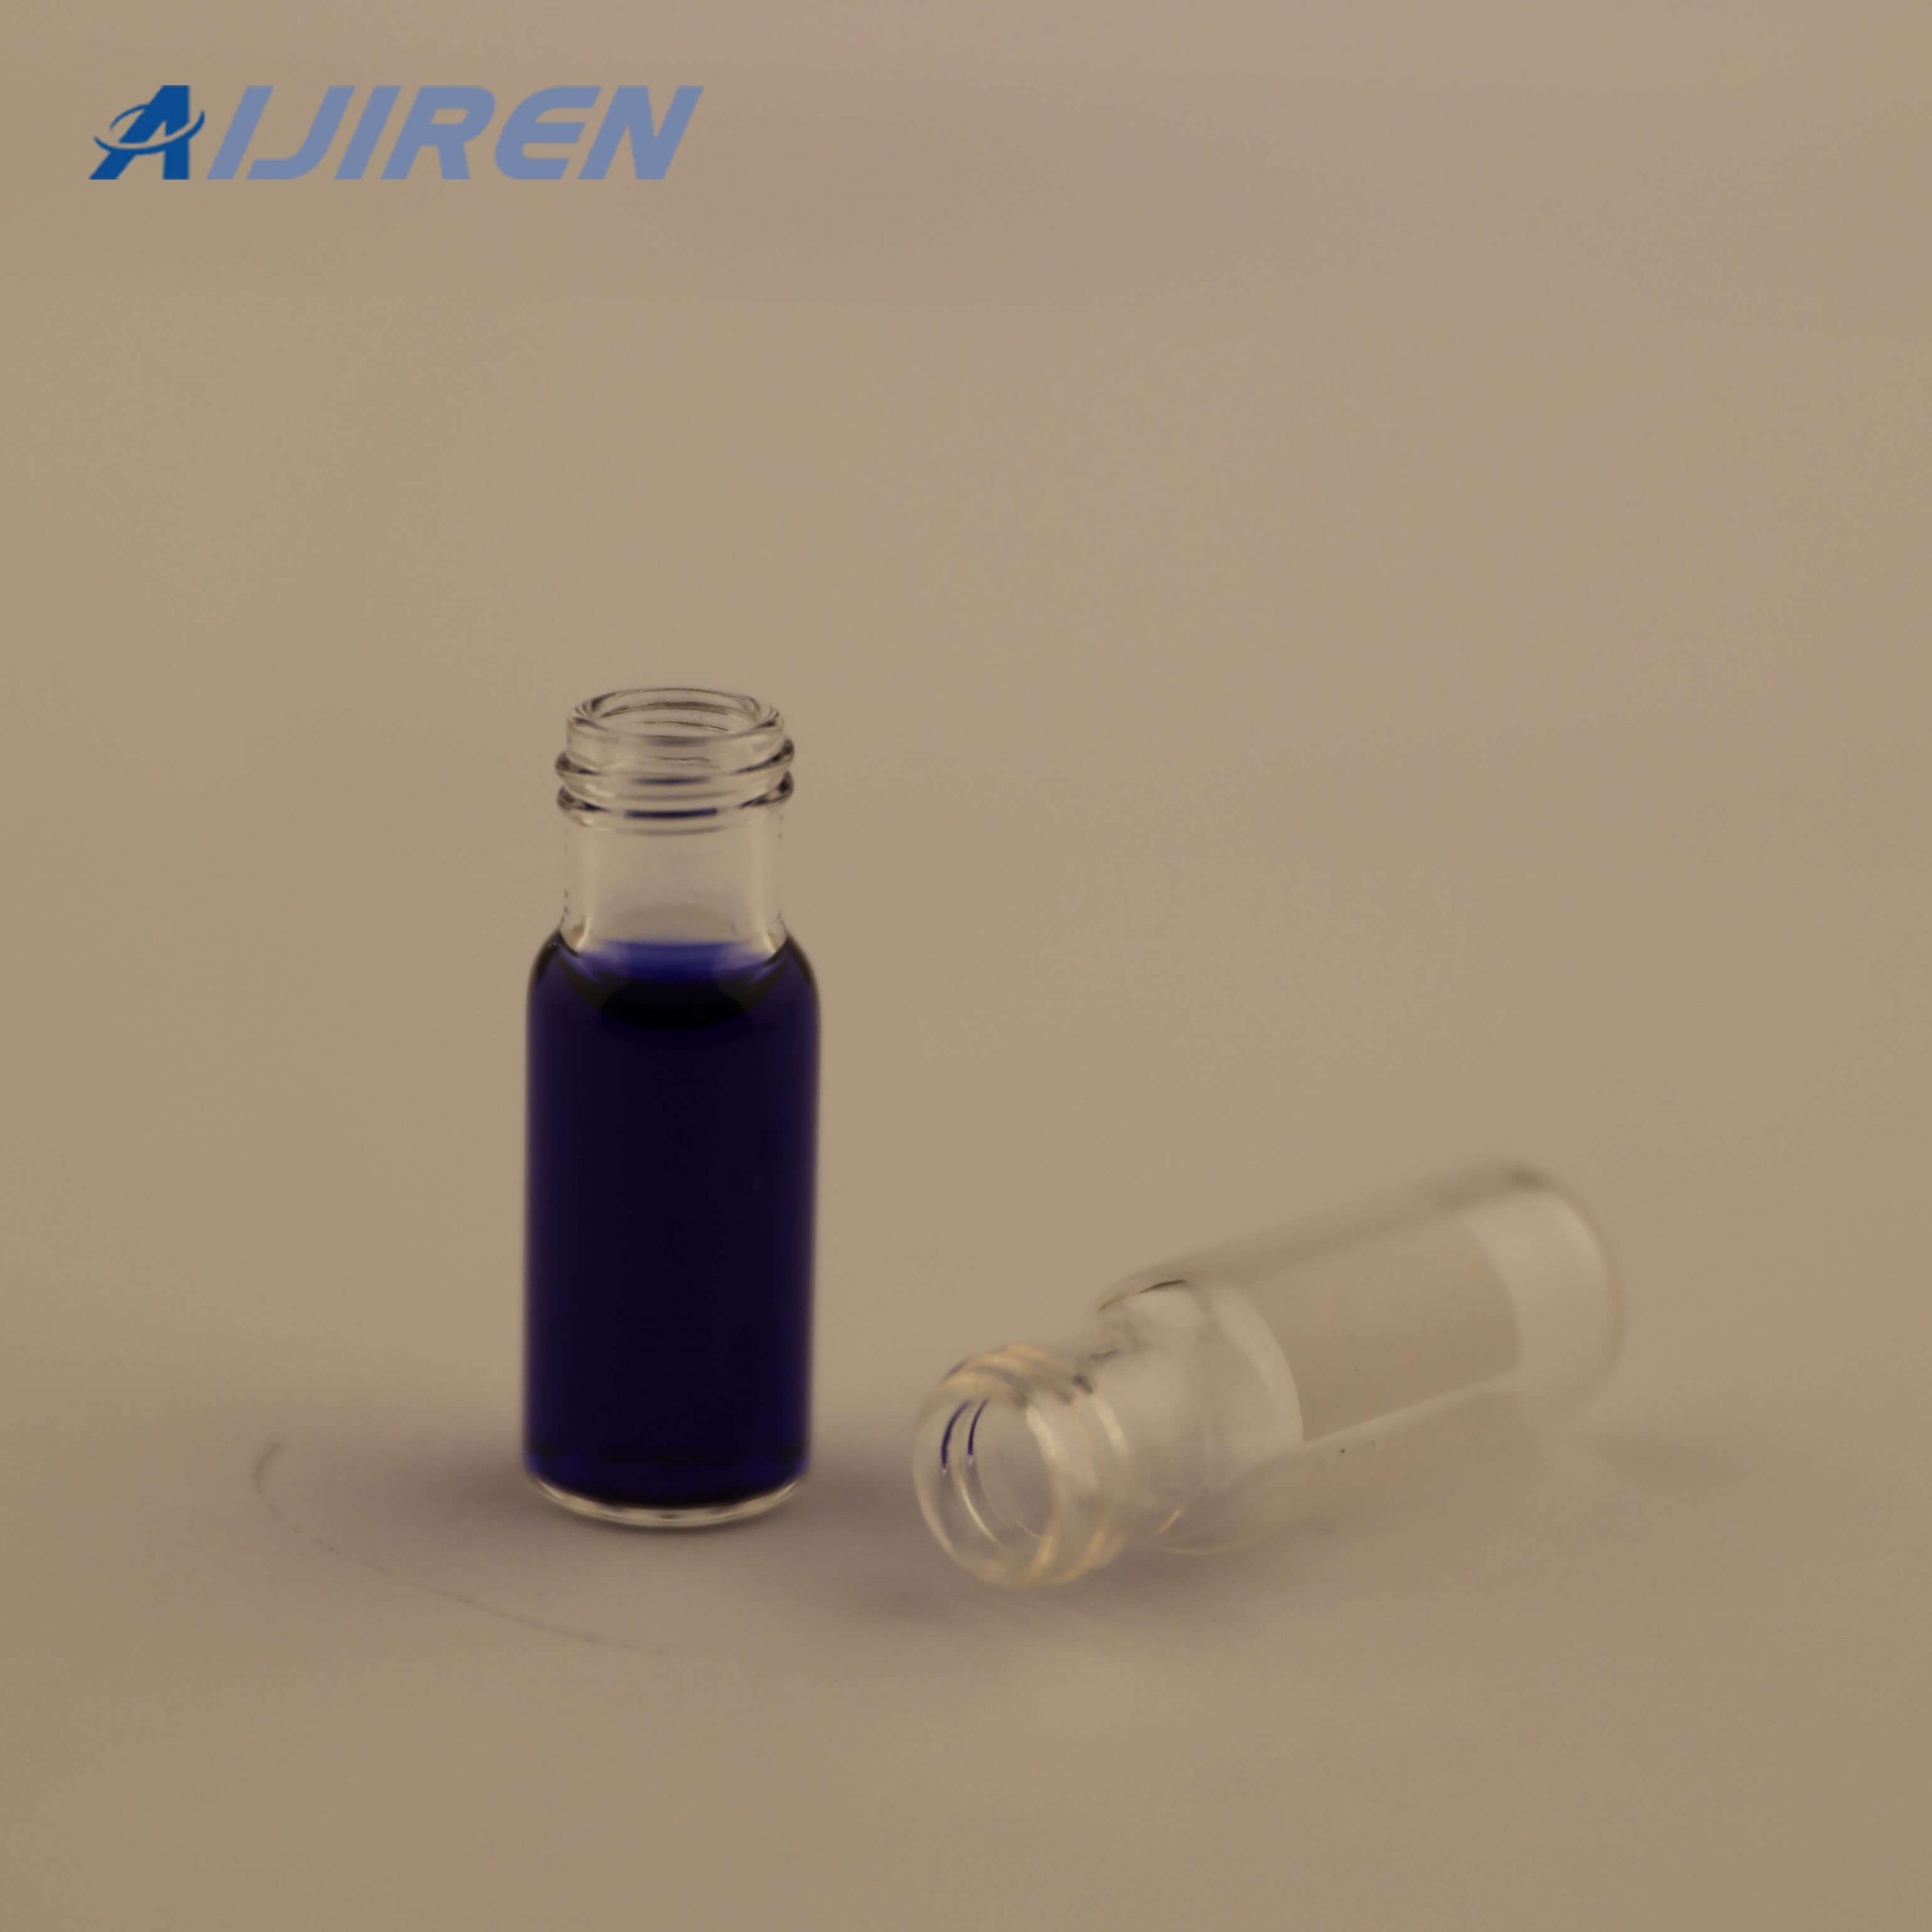 HPLC 9mm Screw Top 2ml Vials for Aijiren